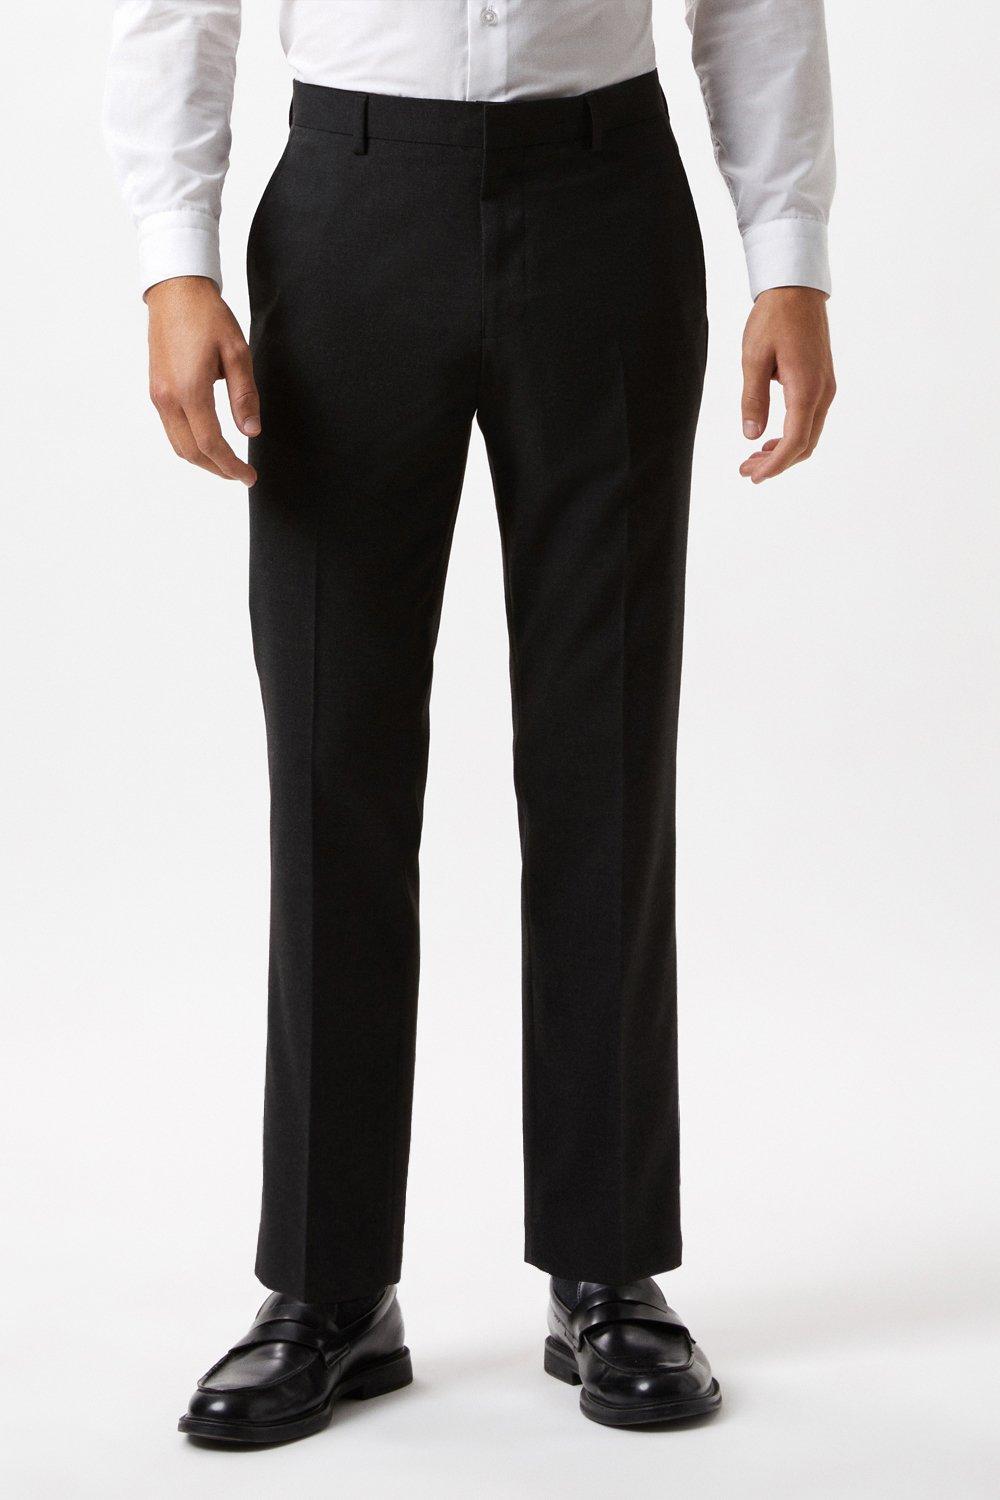 Suits | Slim Fit Charcoal Essential Suit Trousers | Burton